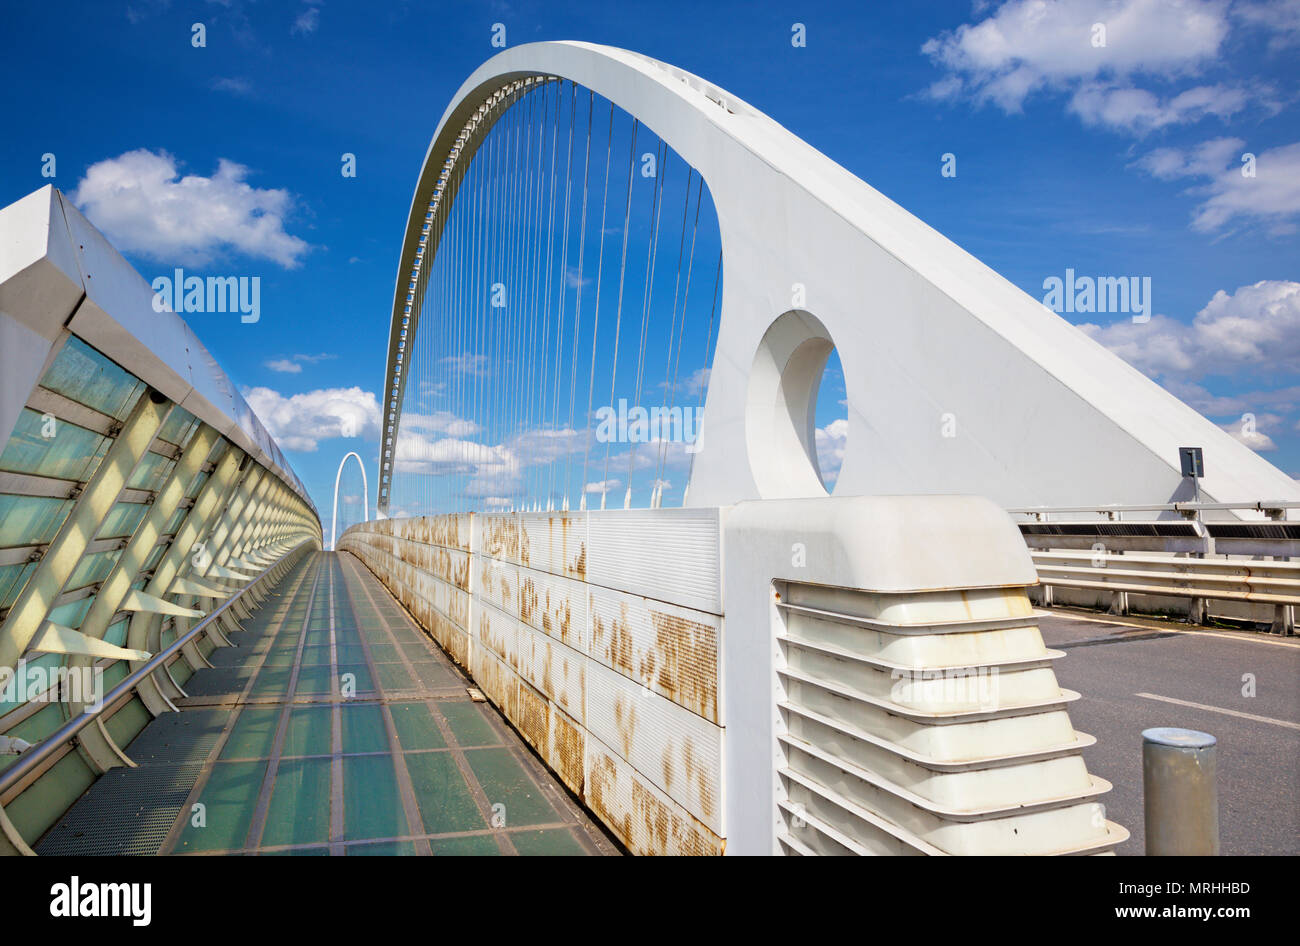 Reggio Emilia - pont voûté moderne par l'architecte Santiago Calatrava Banque D'Images